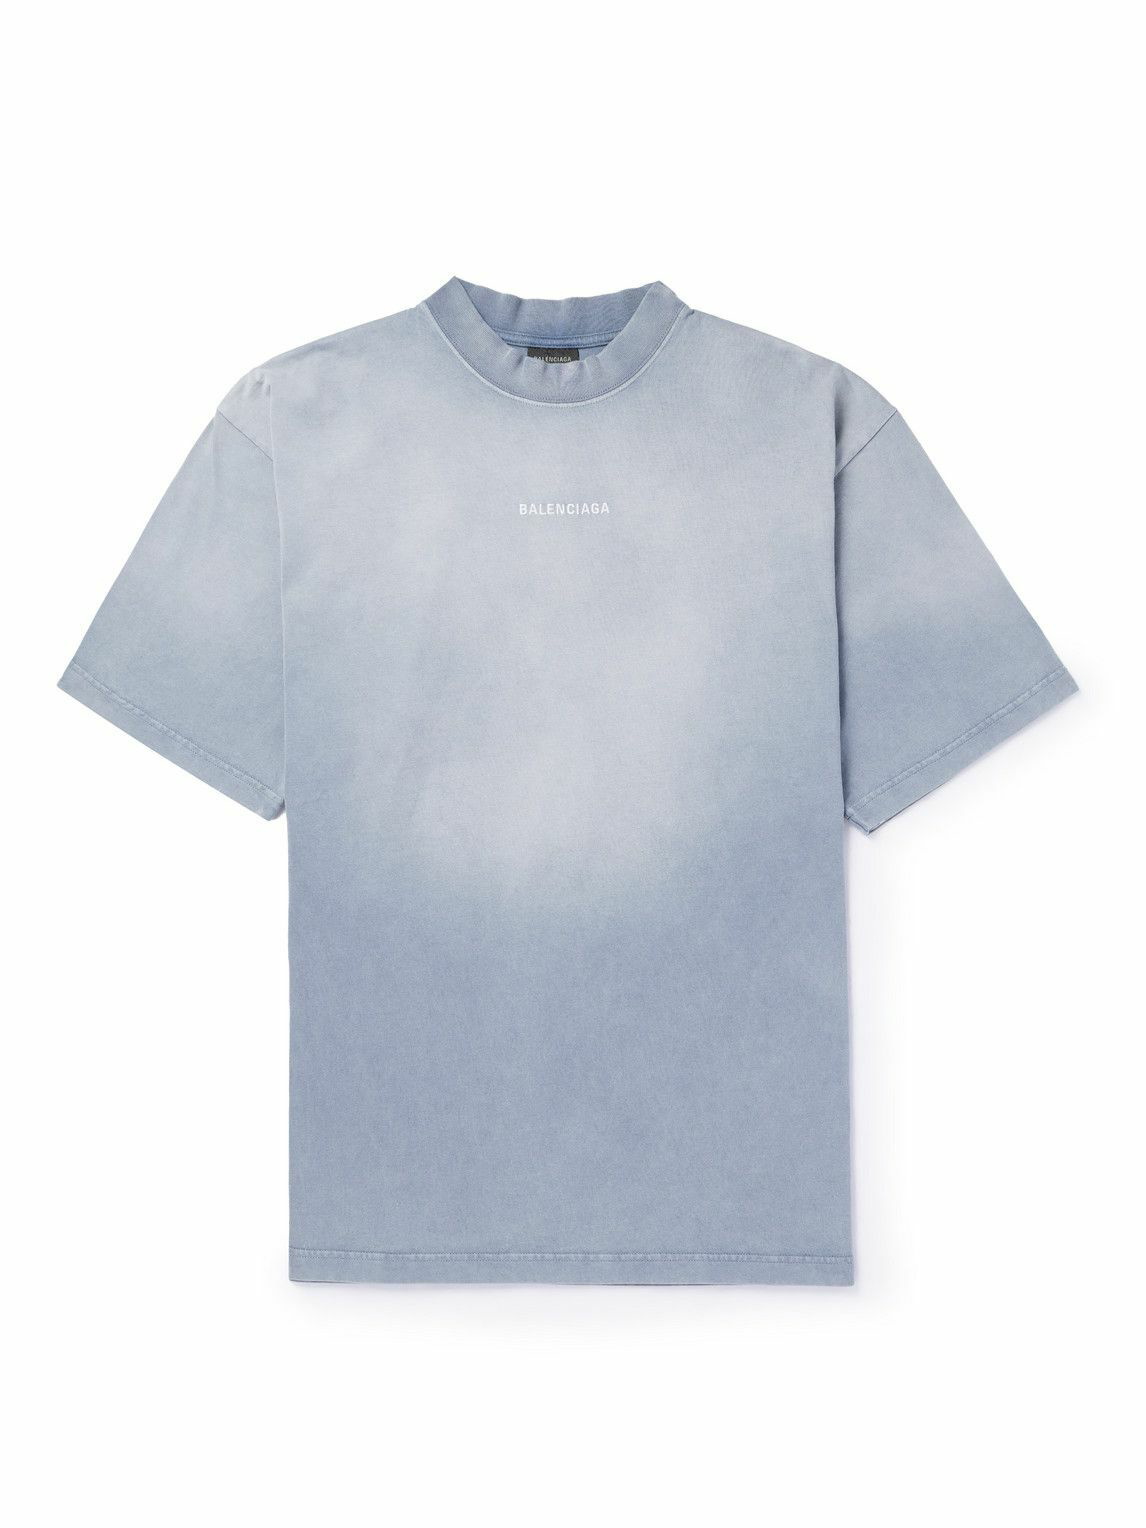 Balenciaga - Logo-Embroidered Cotton-Jersey T-Shirt - Blue Balenciaga